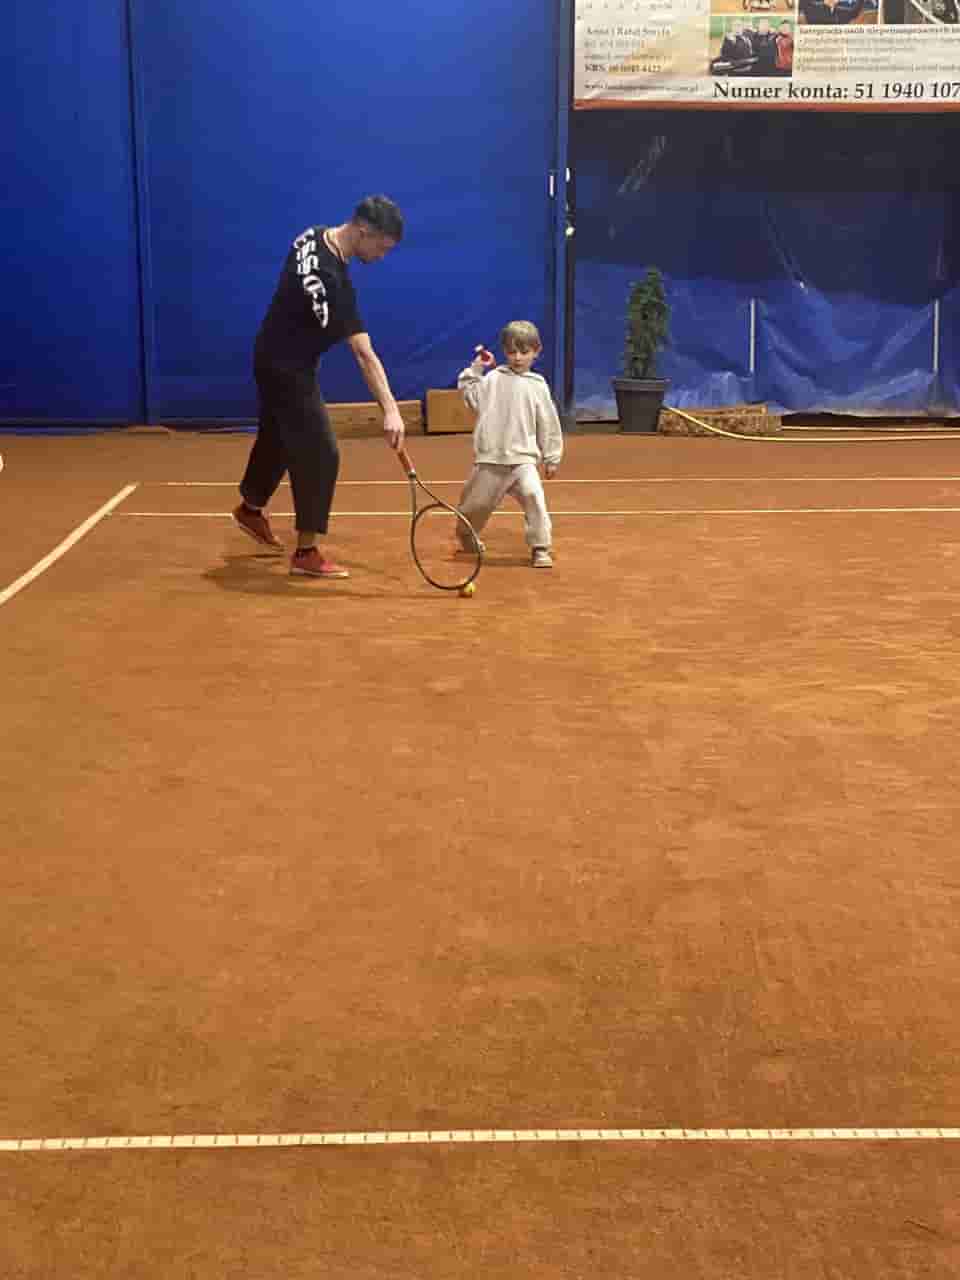 grupy tenisowe dla doroslych, grópki tenisowe dla dzieci, tenis dla amatorów